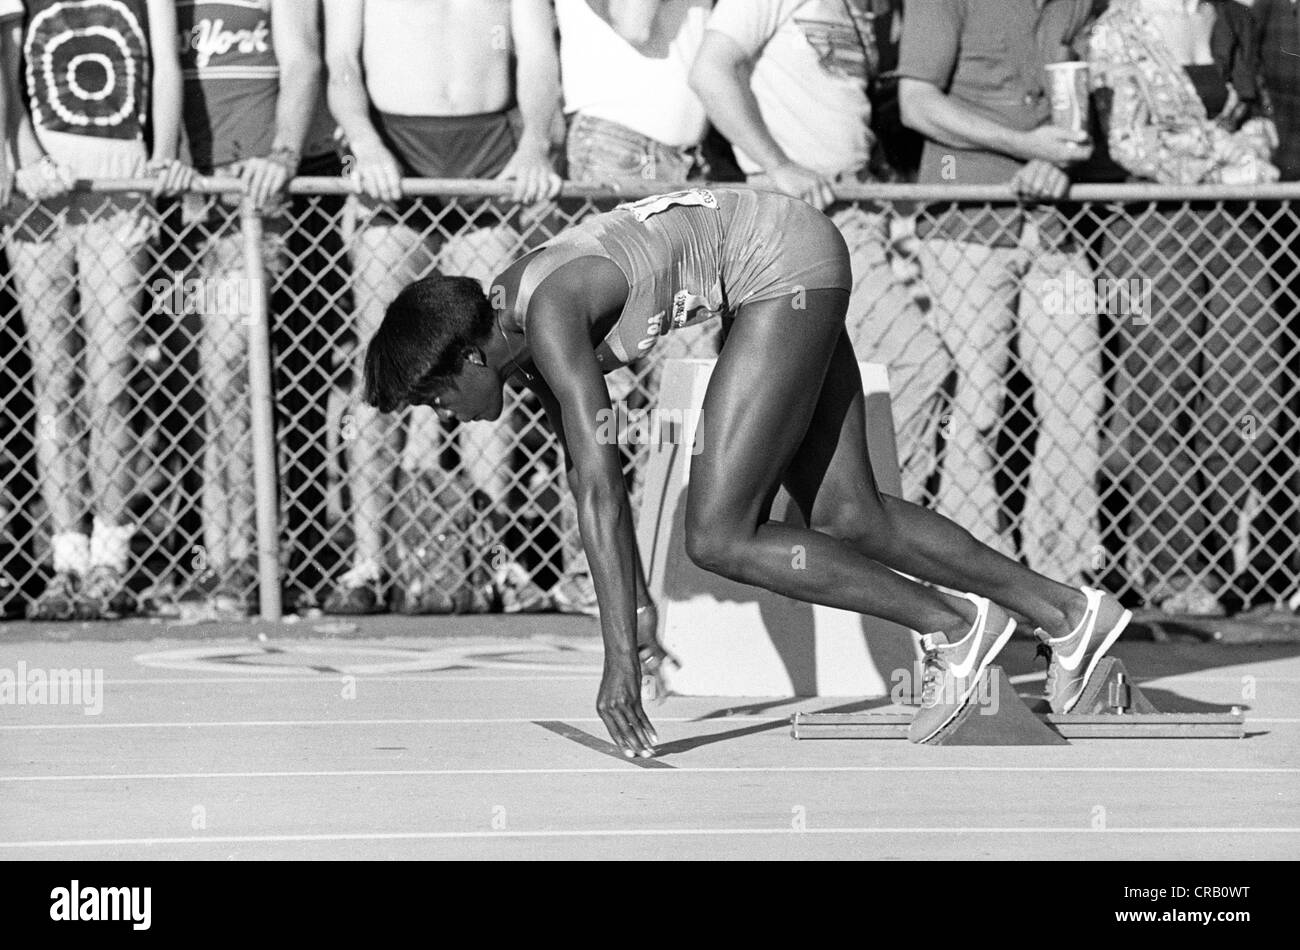 Chandra Cheeseborough competono al 1980 Noi pista olimpica e sperimentazioni in campo. Foto Stock